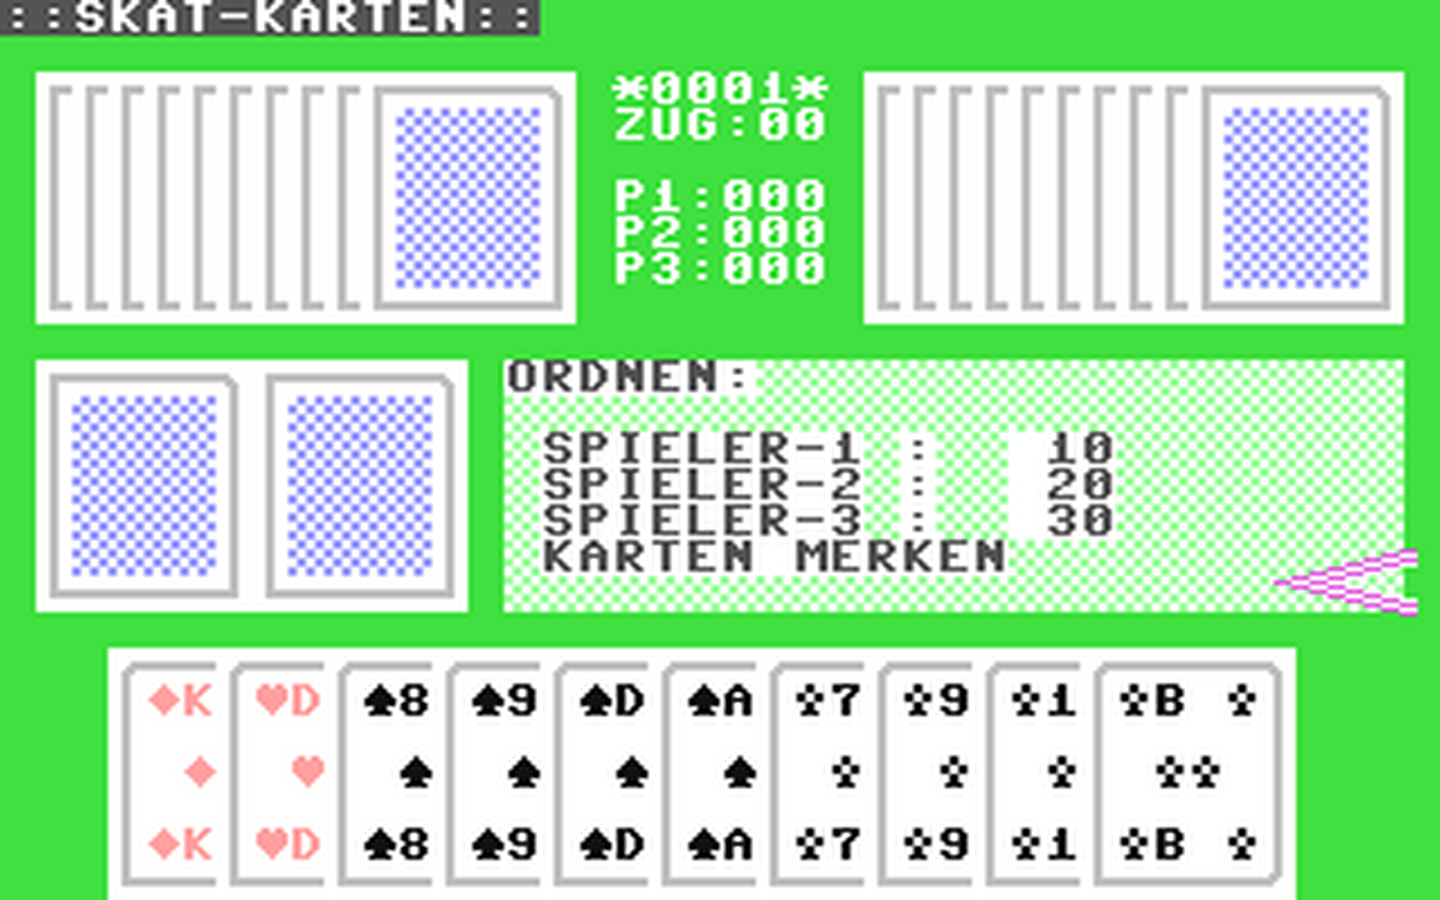 C64 GameBase Skat-Karten (Public_Domain) 2006